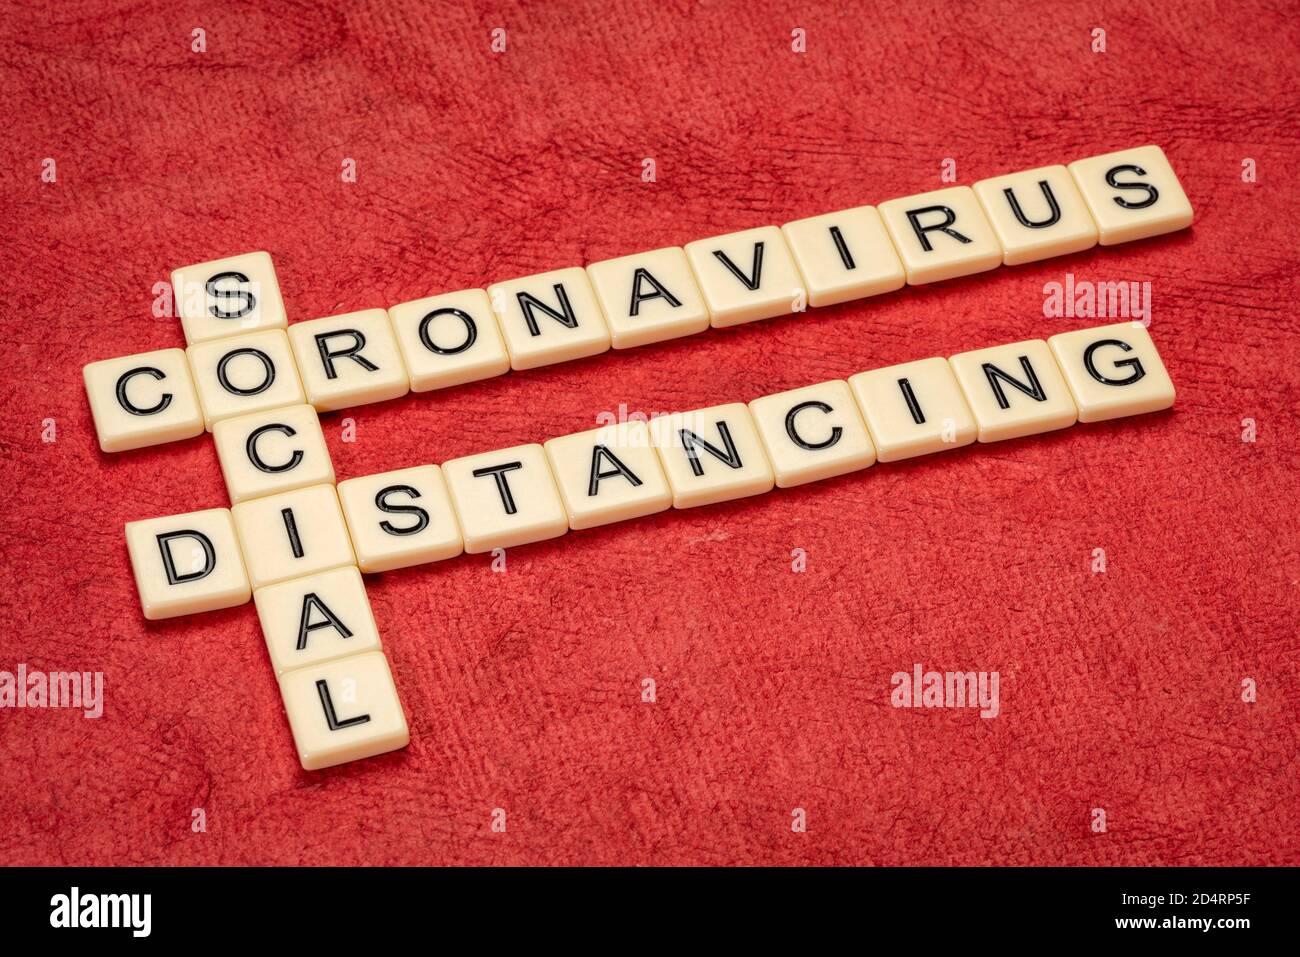 Coronavirus und soziale Distanzierung - Kreuzworträtsel in Elfenbeinbuchstaben gegen texturiertes Papier, covid-19 Pandemiekonzept Stockfoto